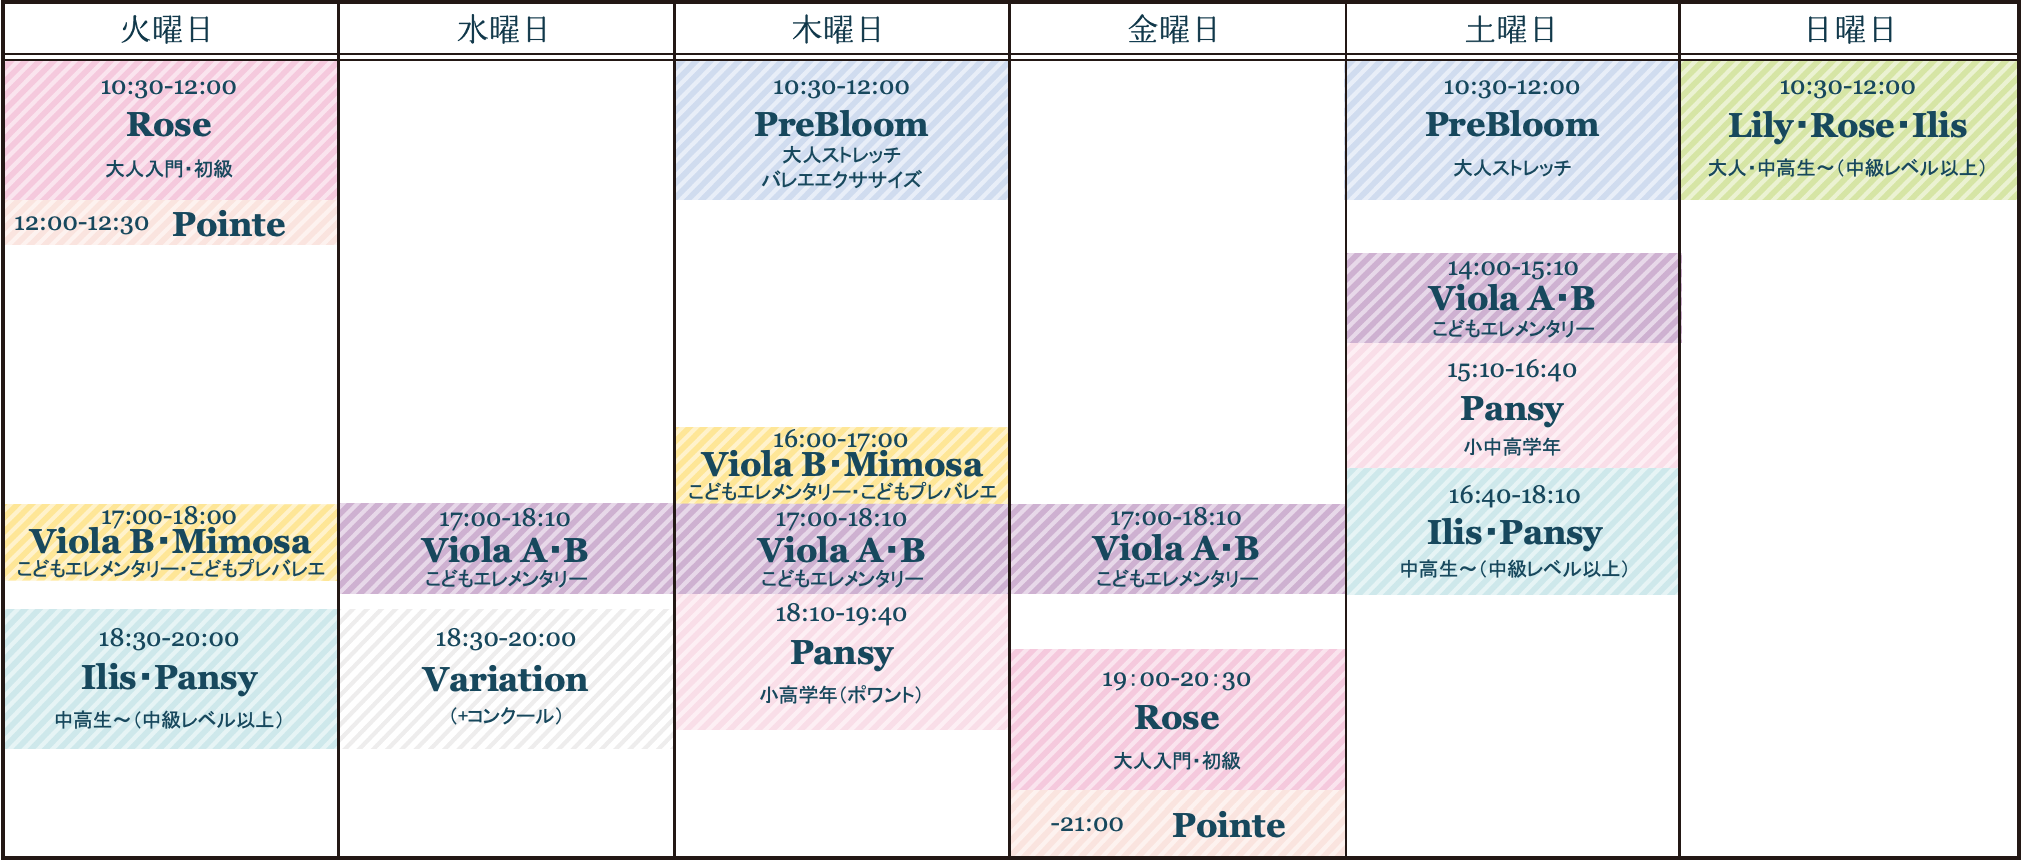 200805_Scheduleのスケジュール